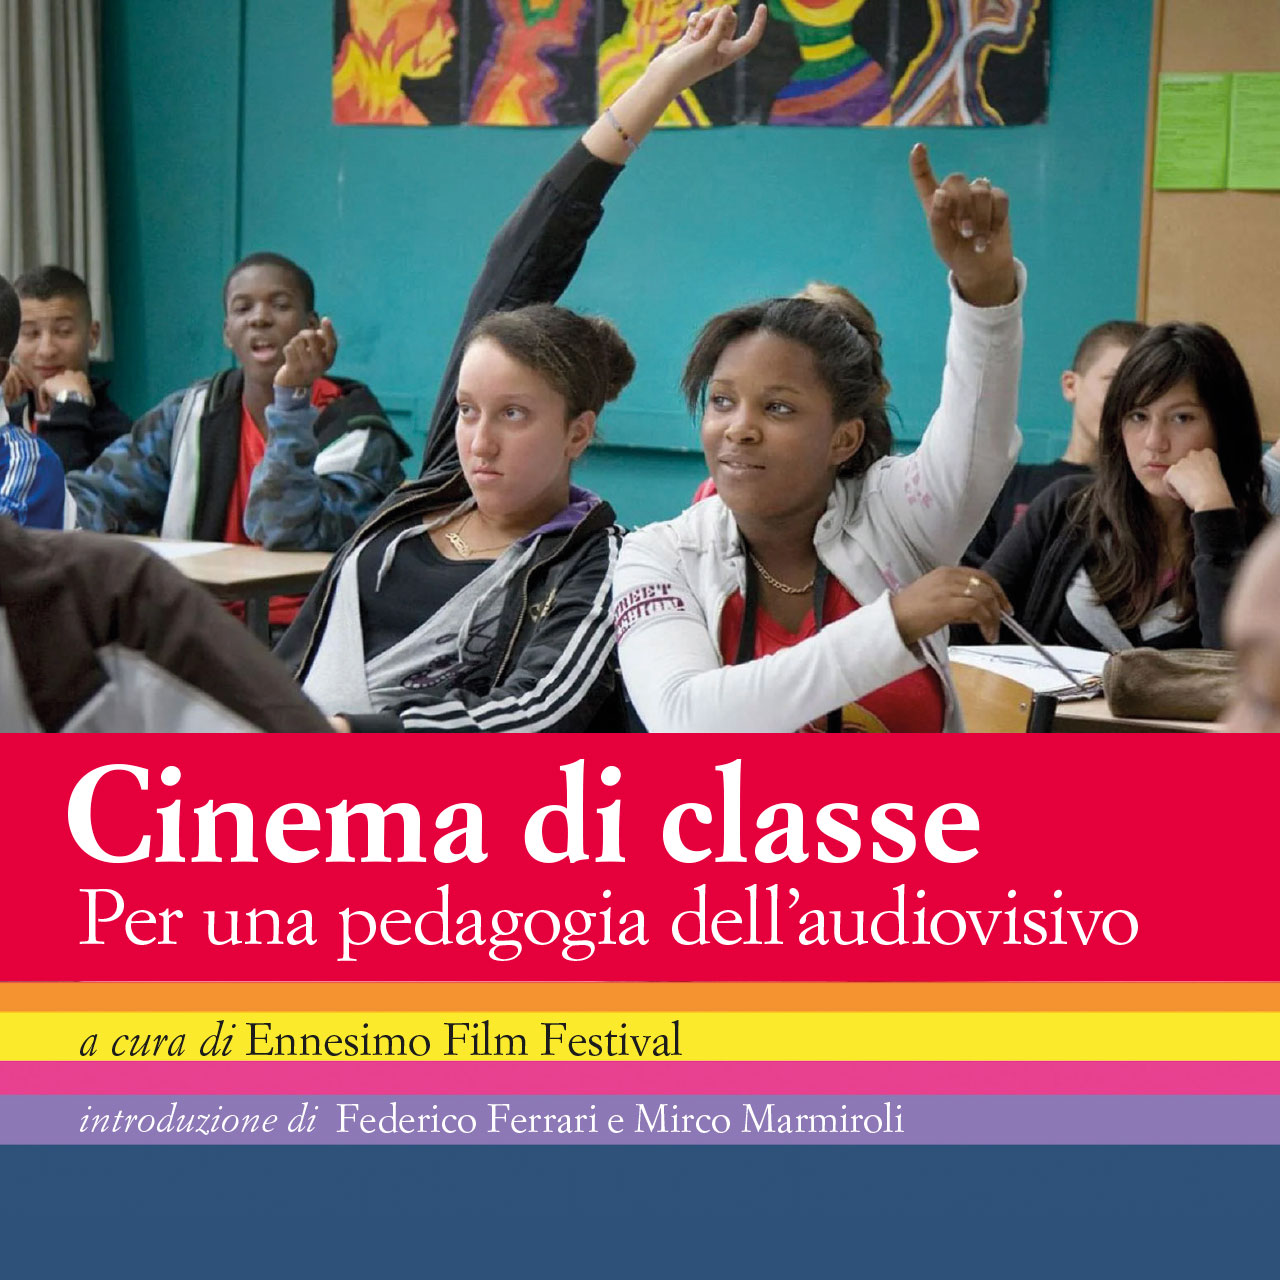 Cinema di classe  Per una pedagogia dell’audiovisivo